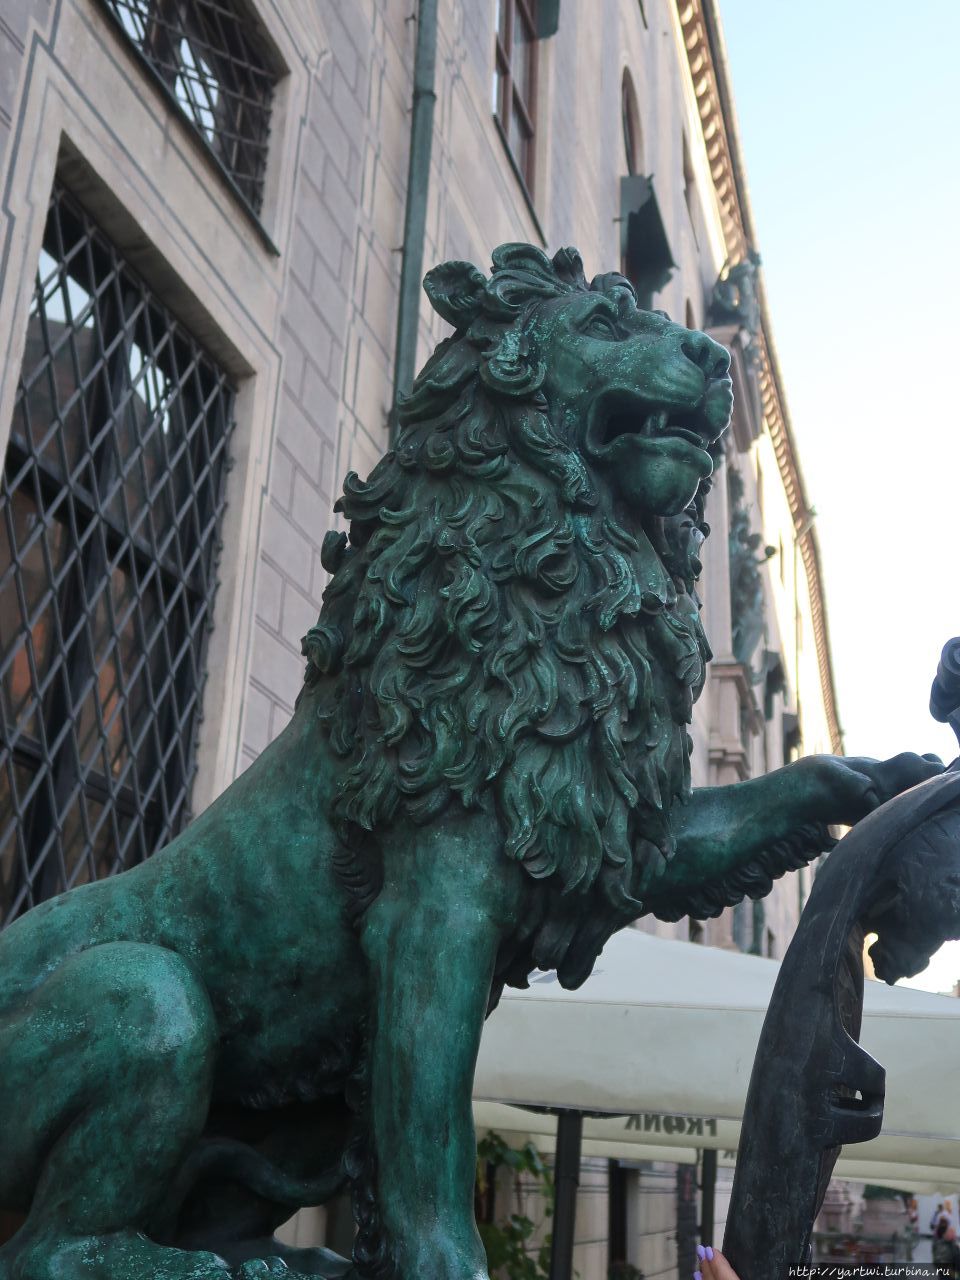 Одно старое мюнхенское суеверие гласит, что если потереть нос льва на щите и загадать желание, оно обязательно исполнится. Мюнхен, Германия